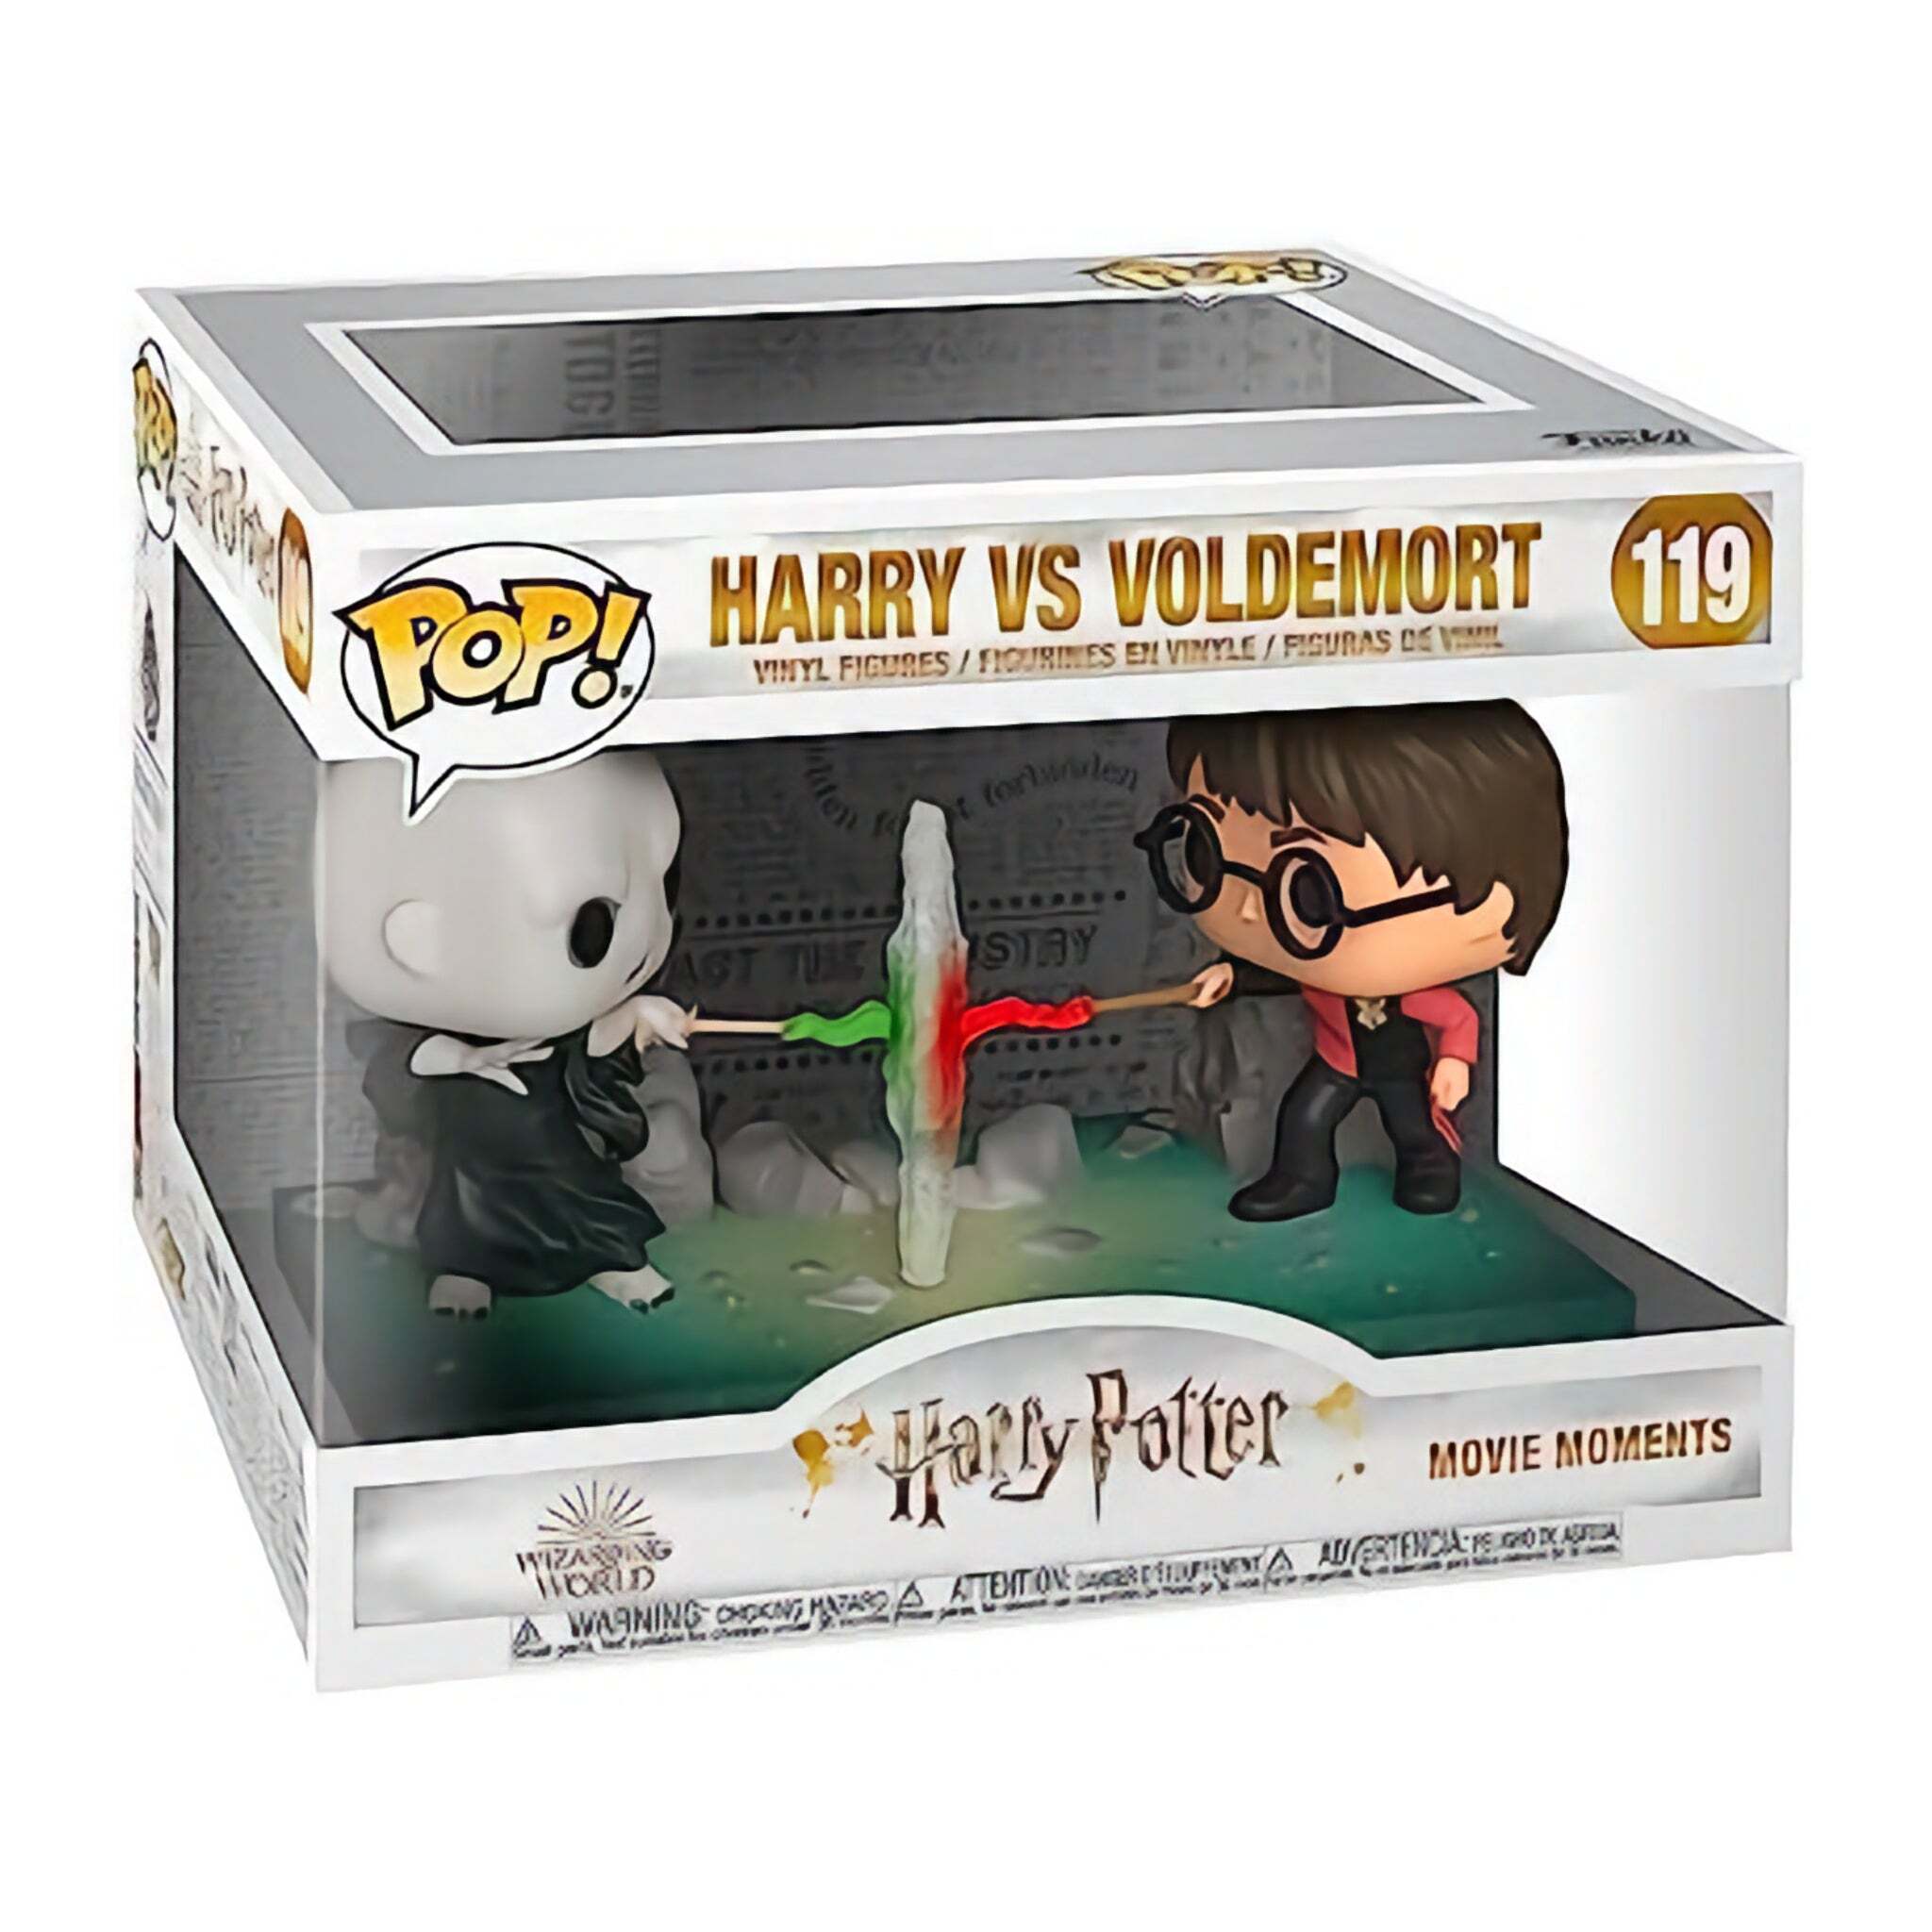 Harry vs Voldemort Funko Pop!